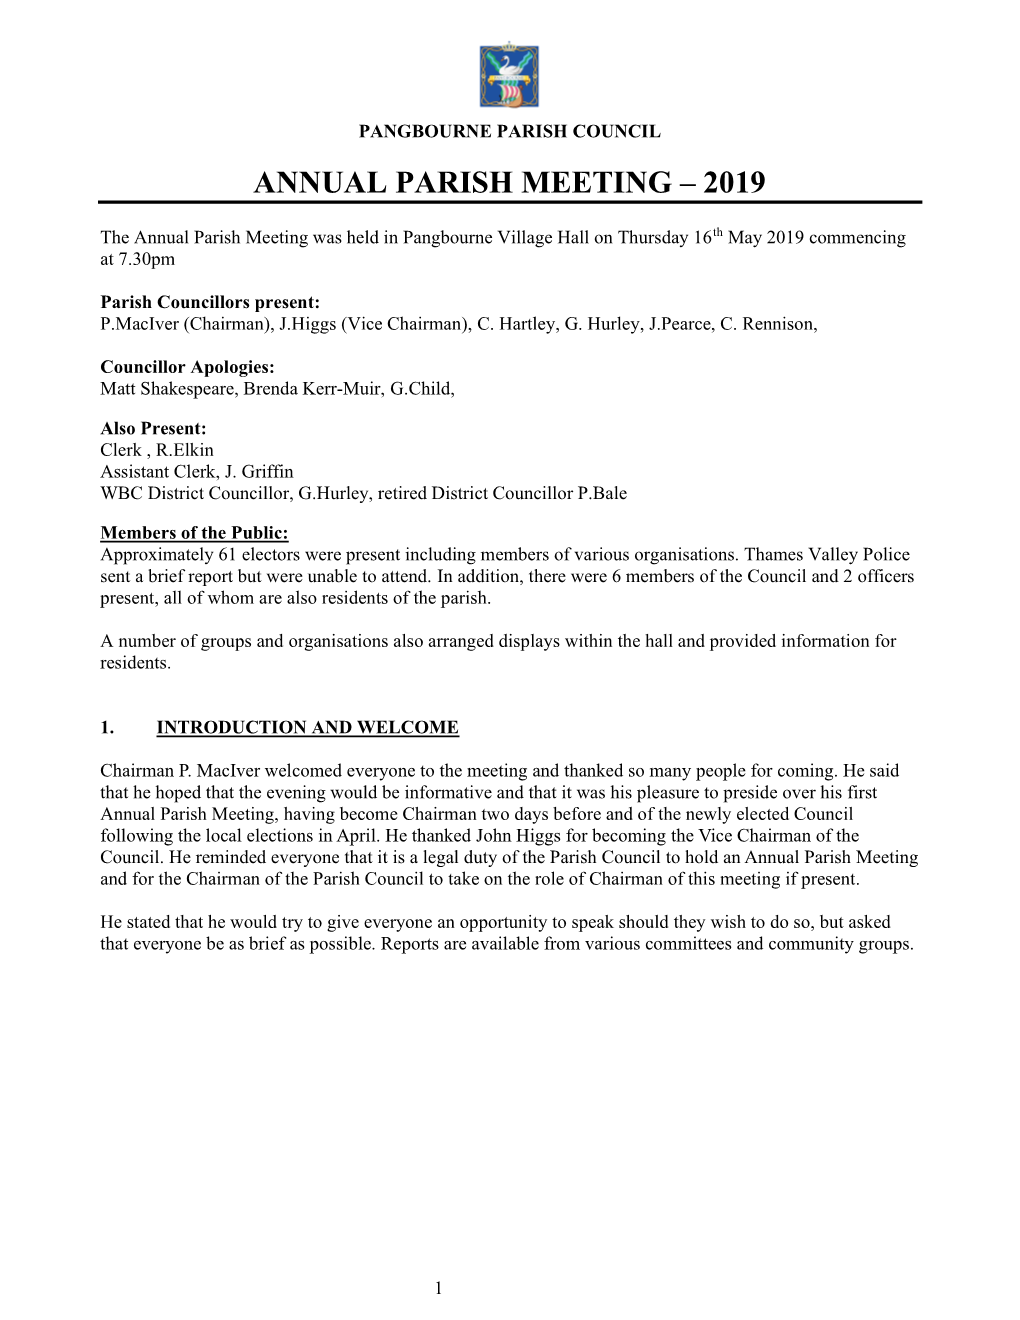 Annual Parish Meeting – 2019